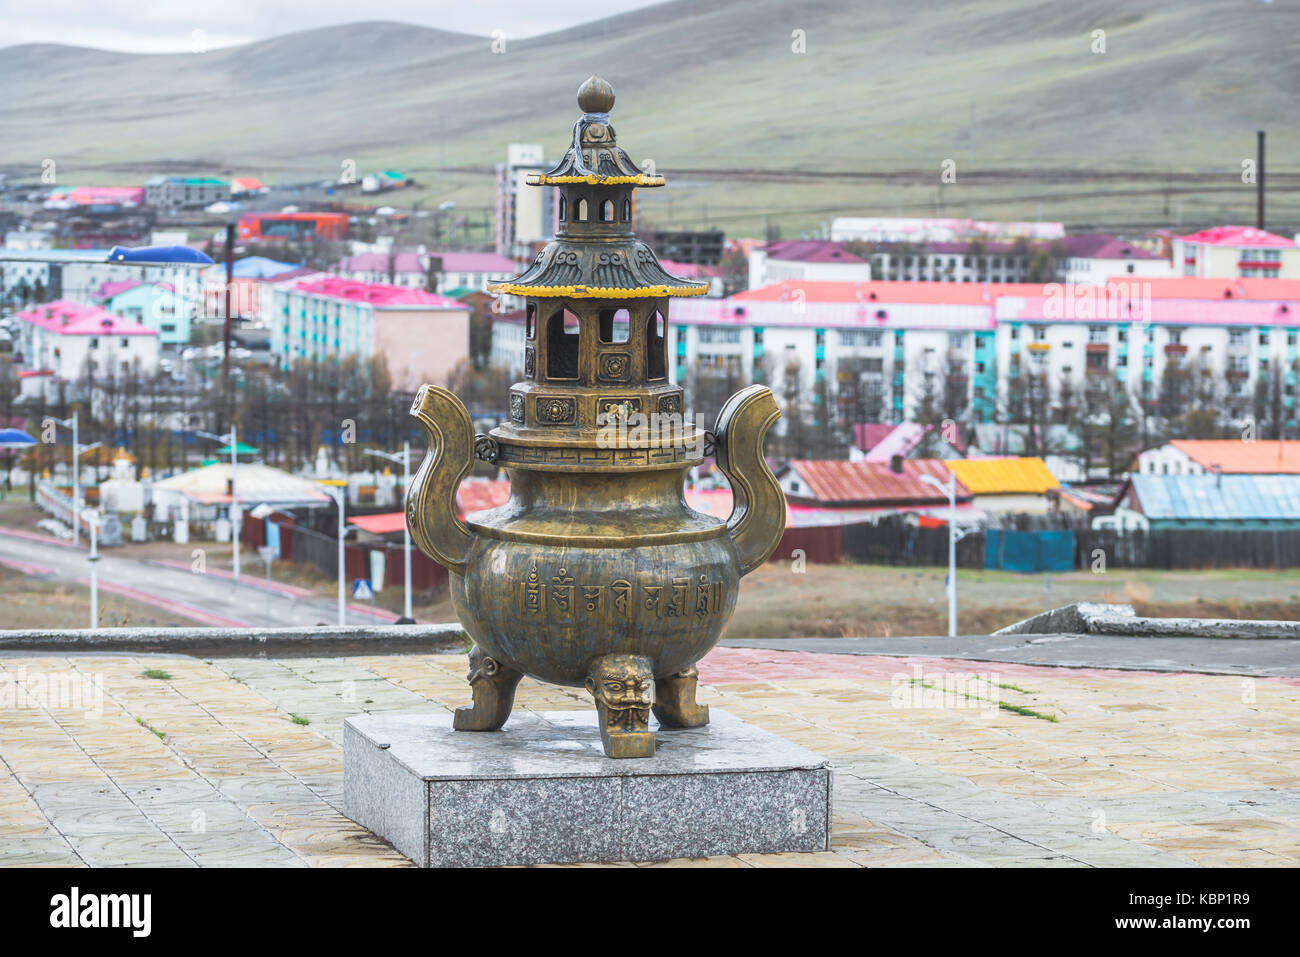 Mongolische Metall religiöse Statue auf Granitsockel mit langen Schritten auf Hintergrund Stockfoto